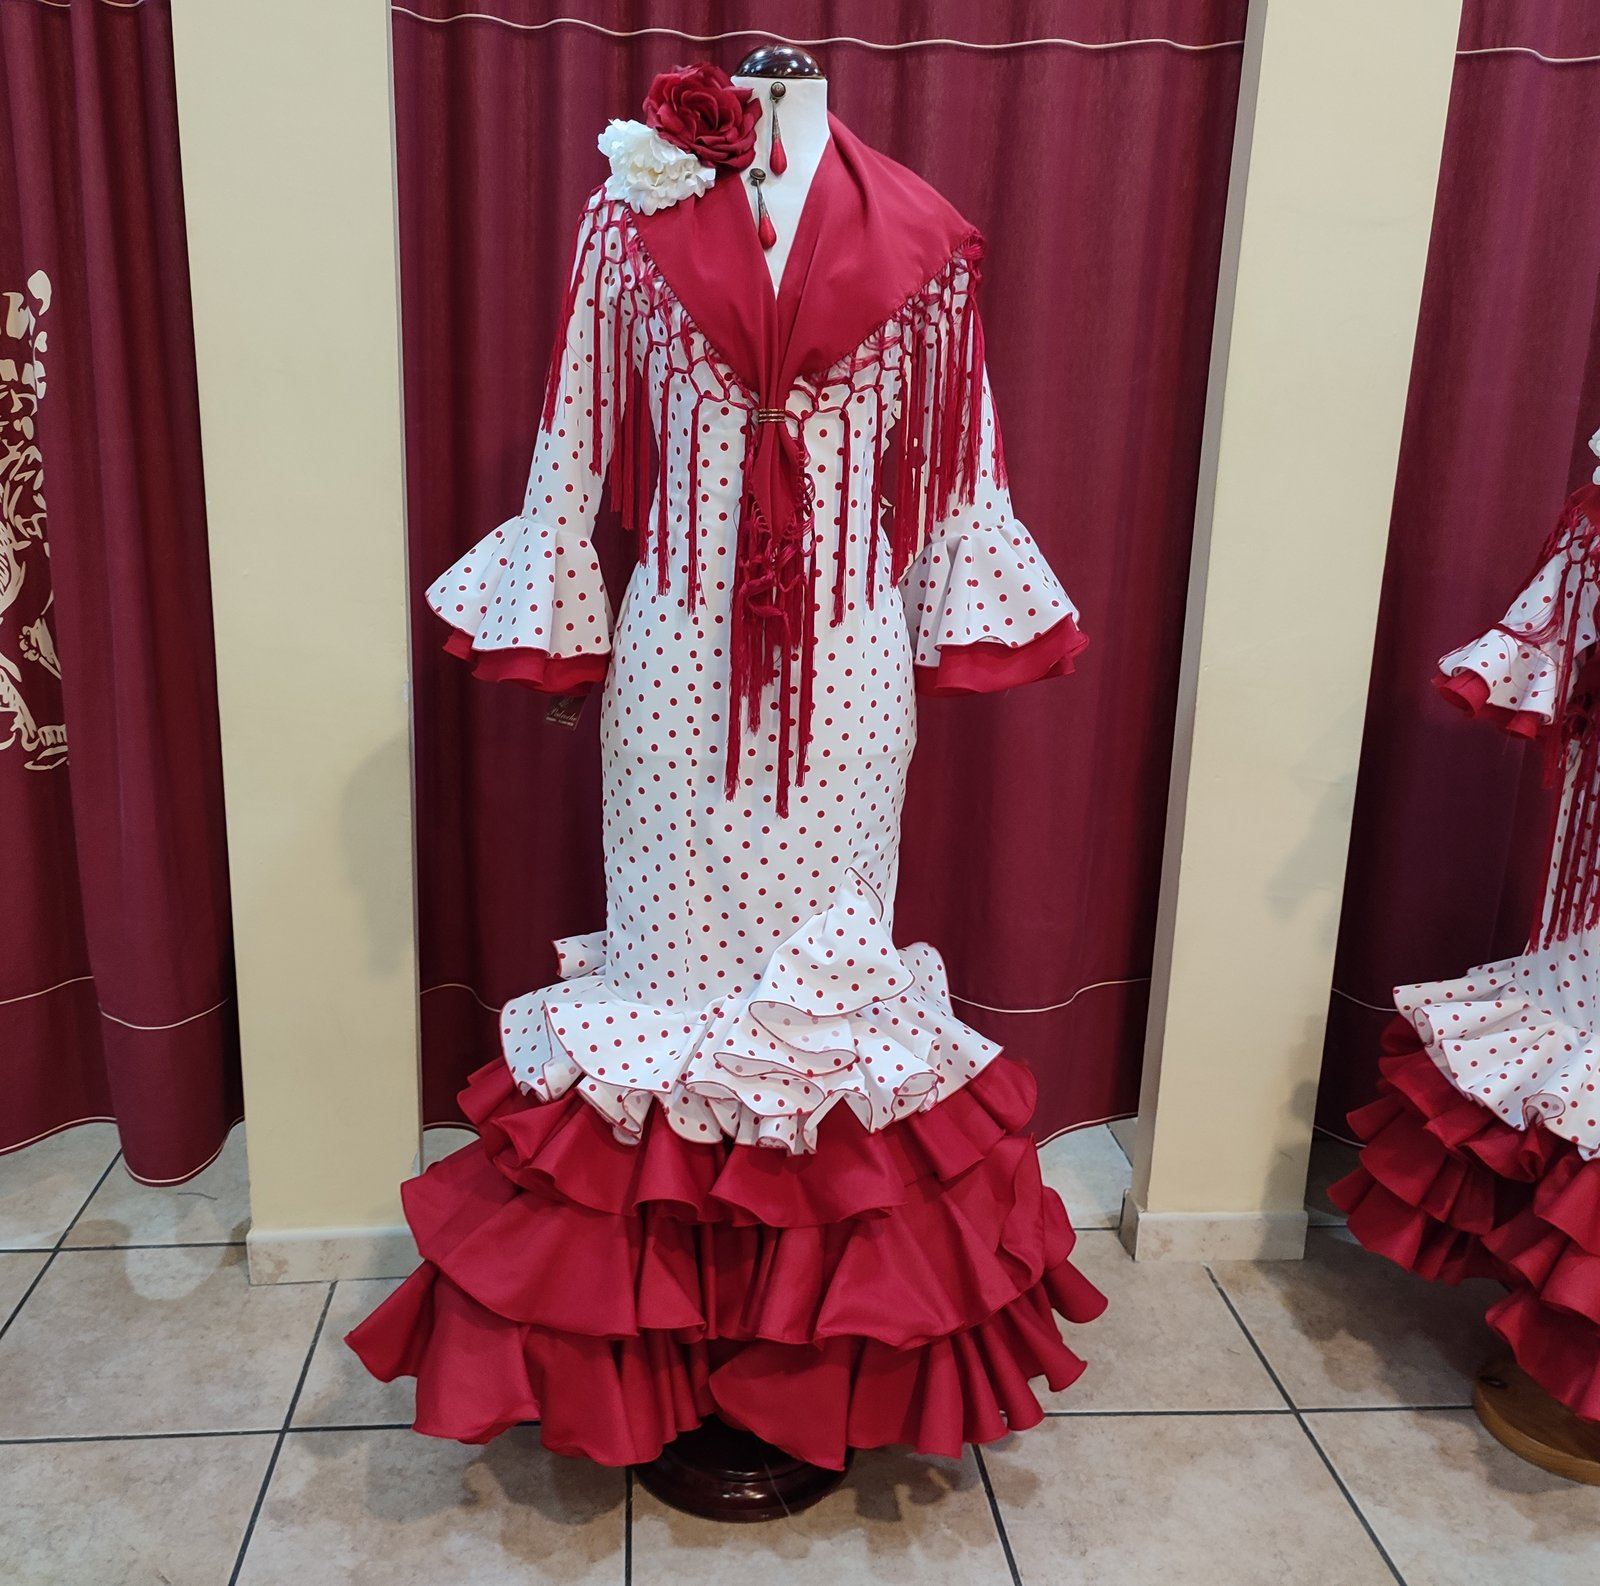 PEDROCHE GITANA Y FLAMENCO - Moda flamenca y campero - Complementos